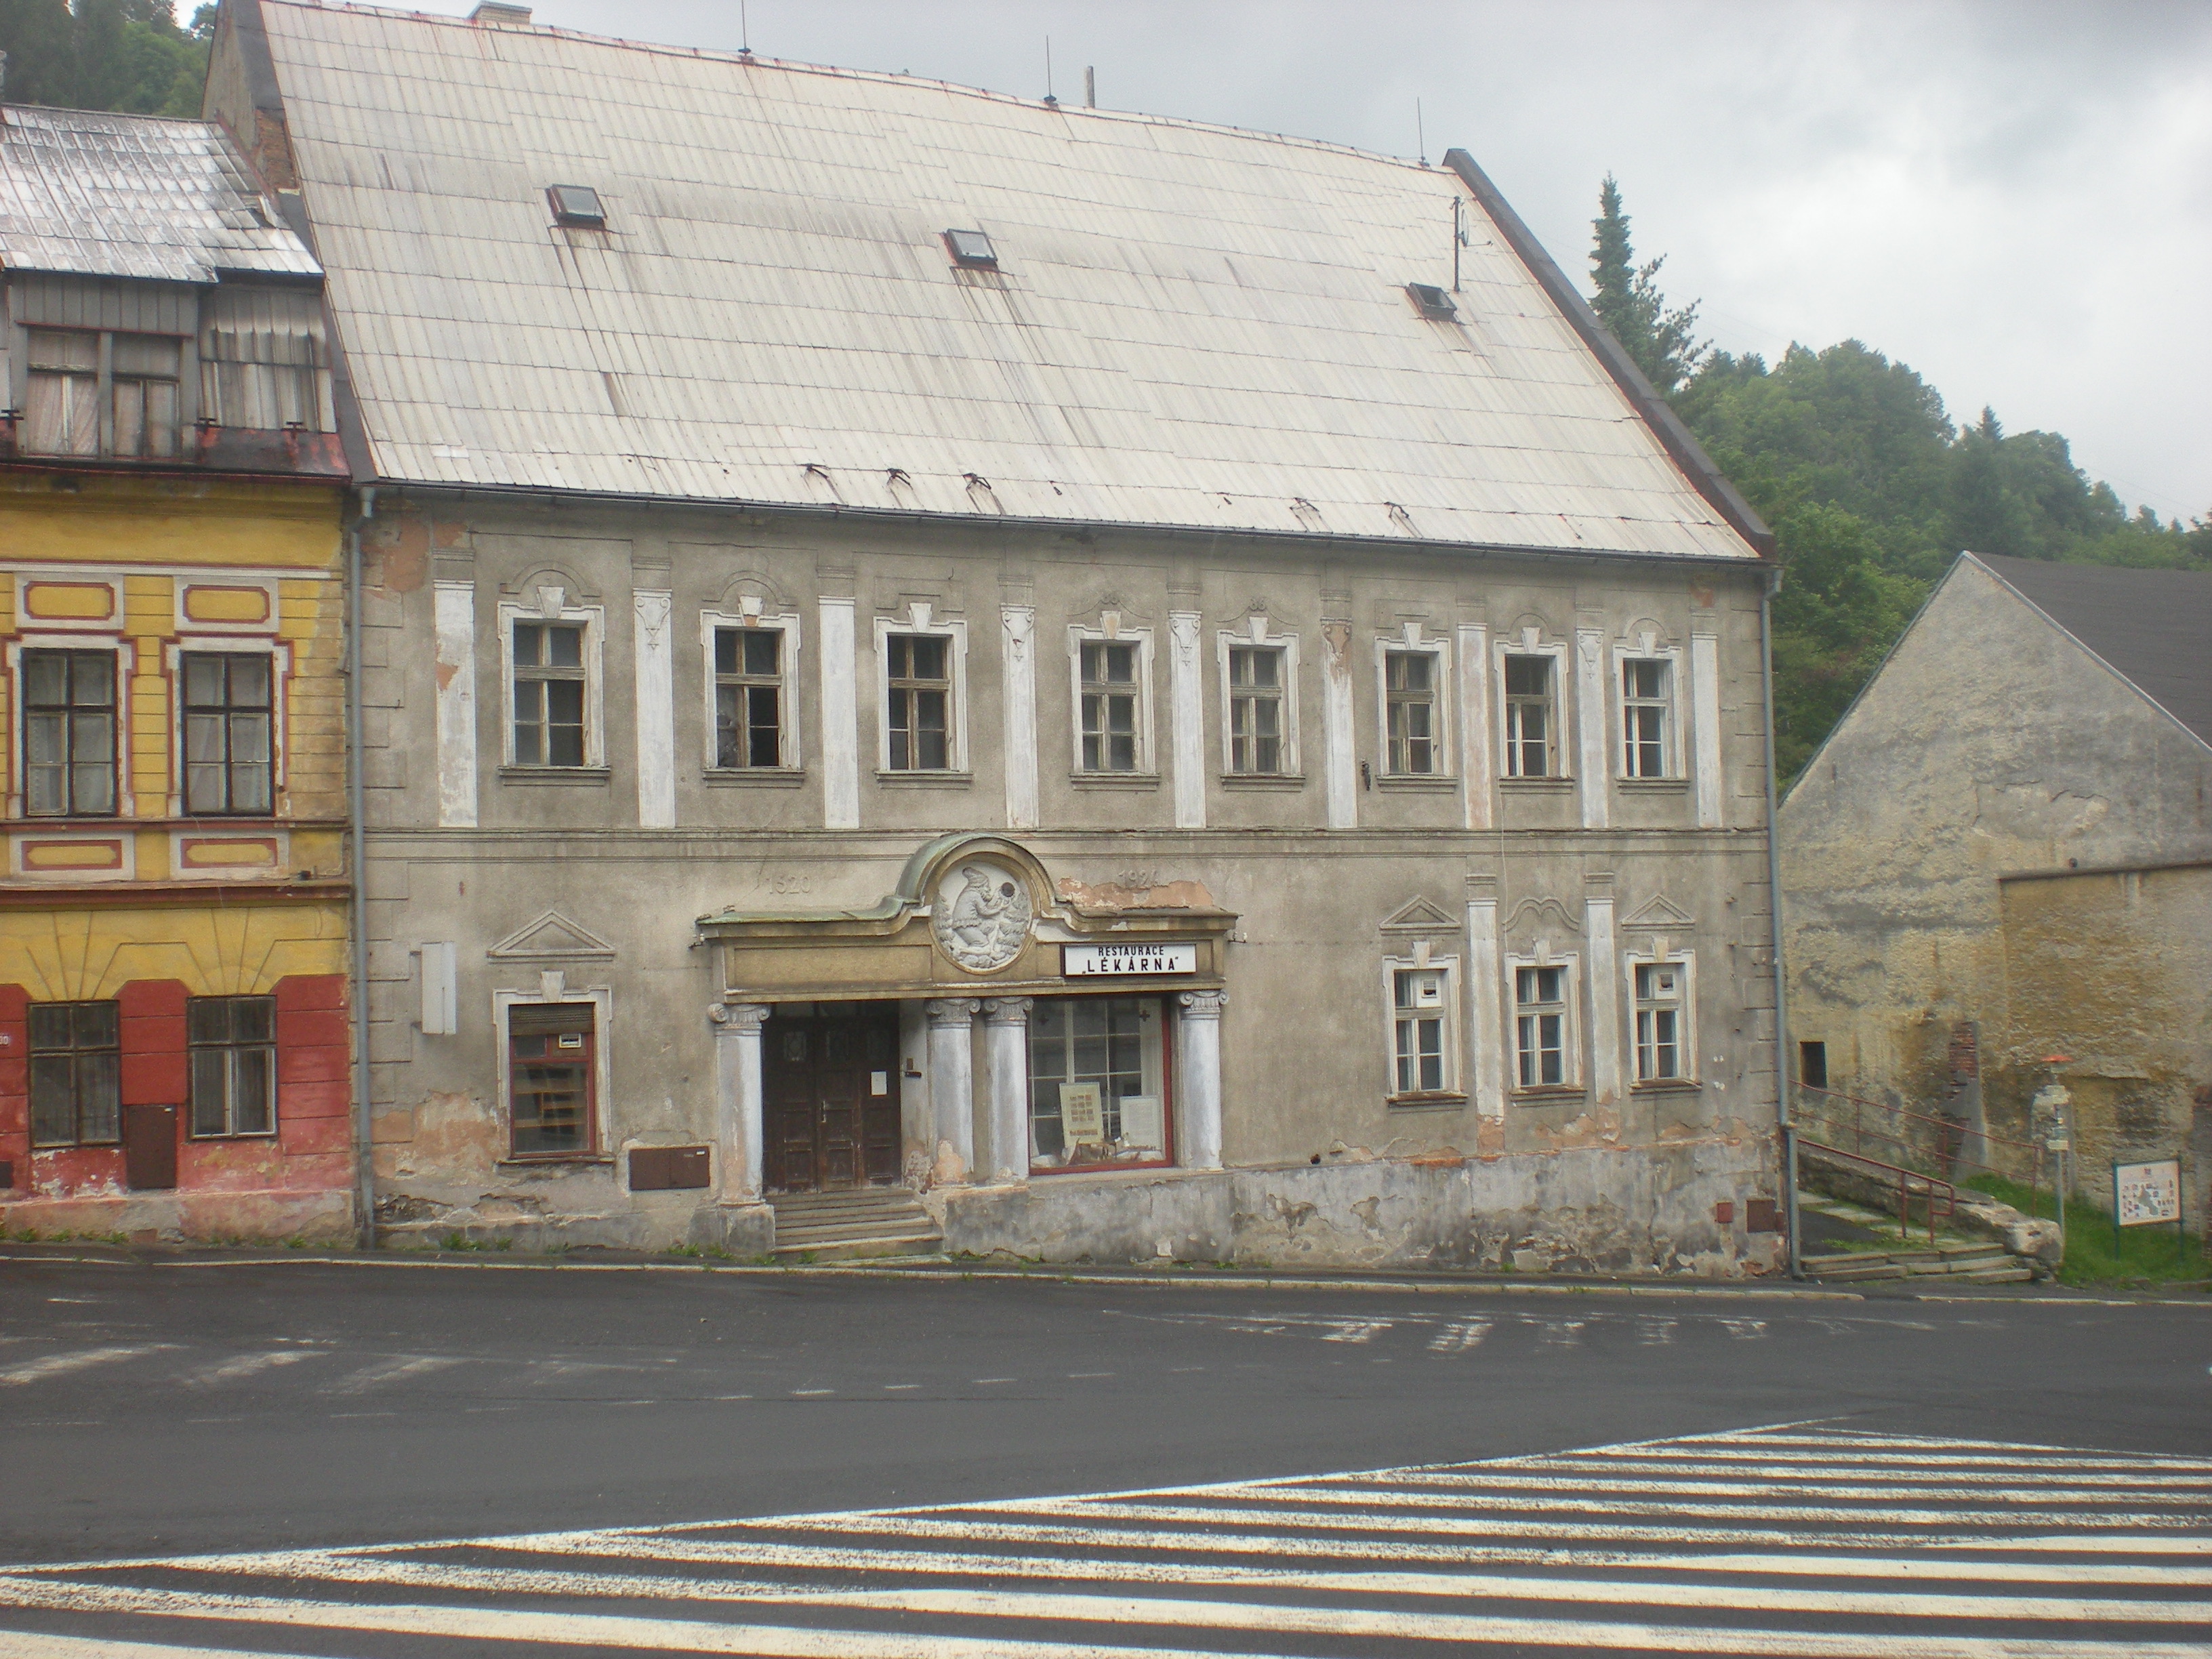 Budova bývalého soudu - původně první lékárna na území ČR